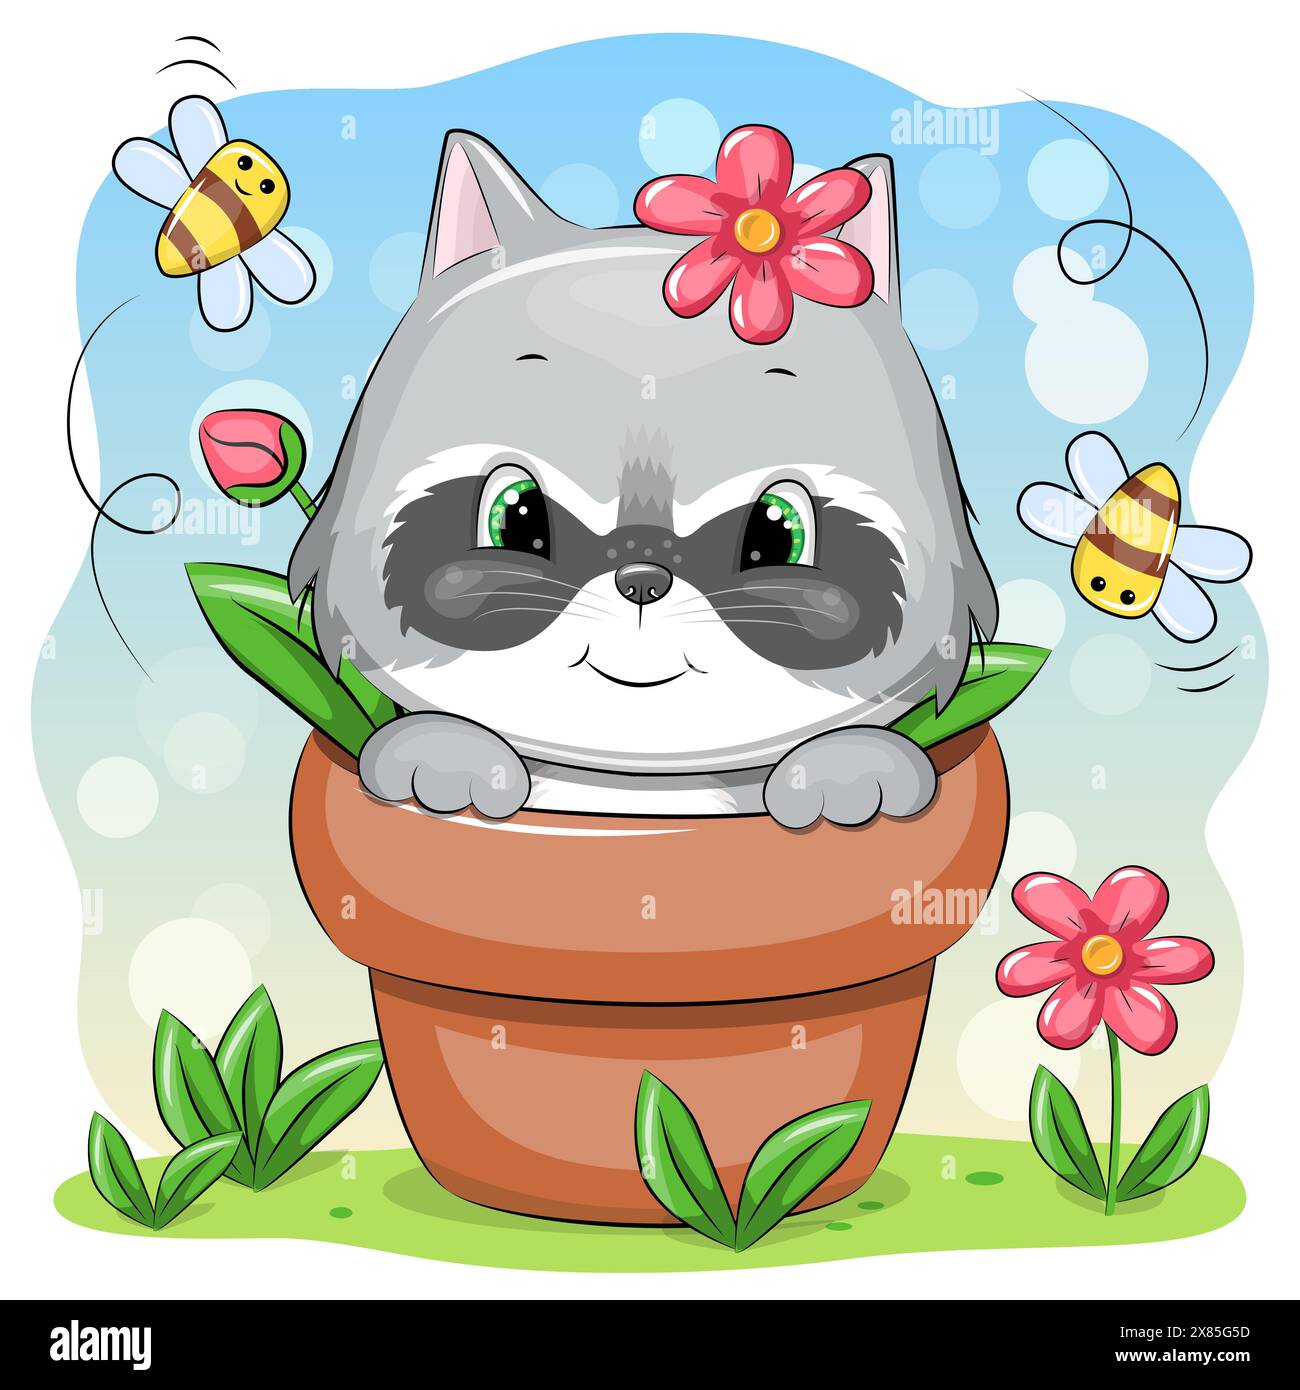 Raton laveur de dessin animé mignon dans un pot de fleurs avec des abeilles et des fleurs. Illustration vectorielle de l'animal dans la nature. Illustration de Vecteur